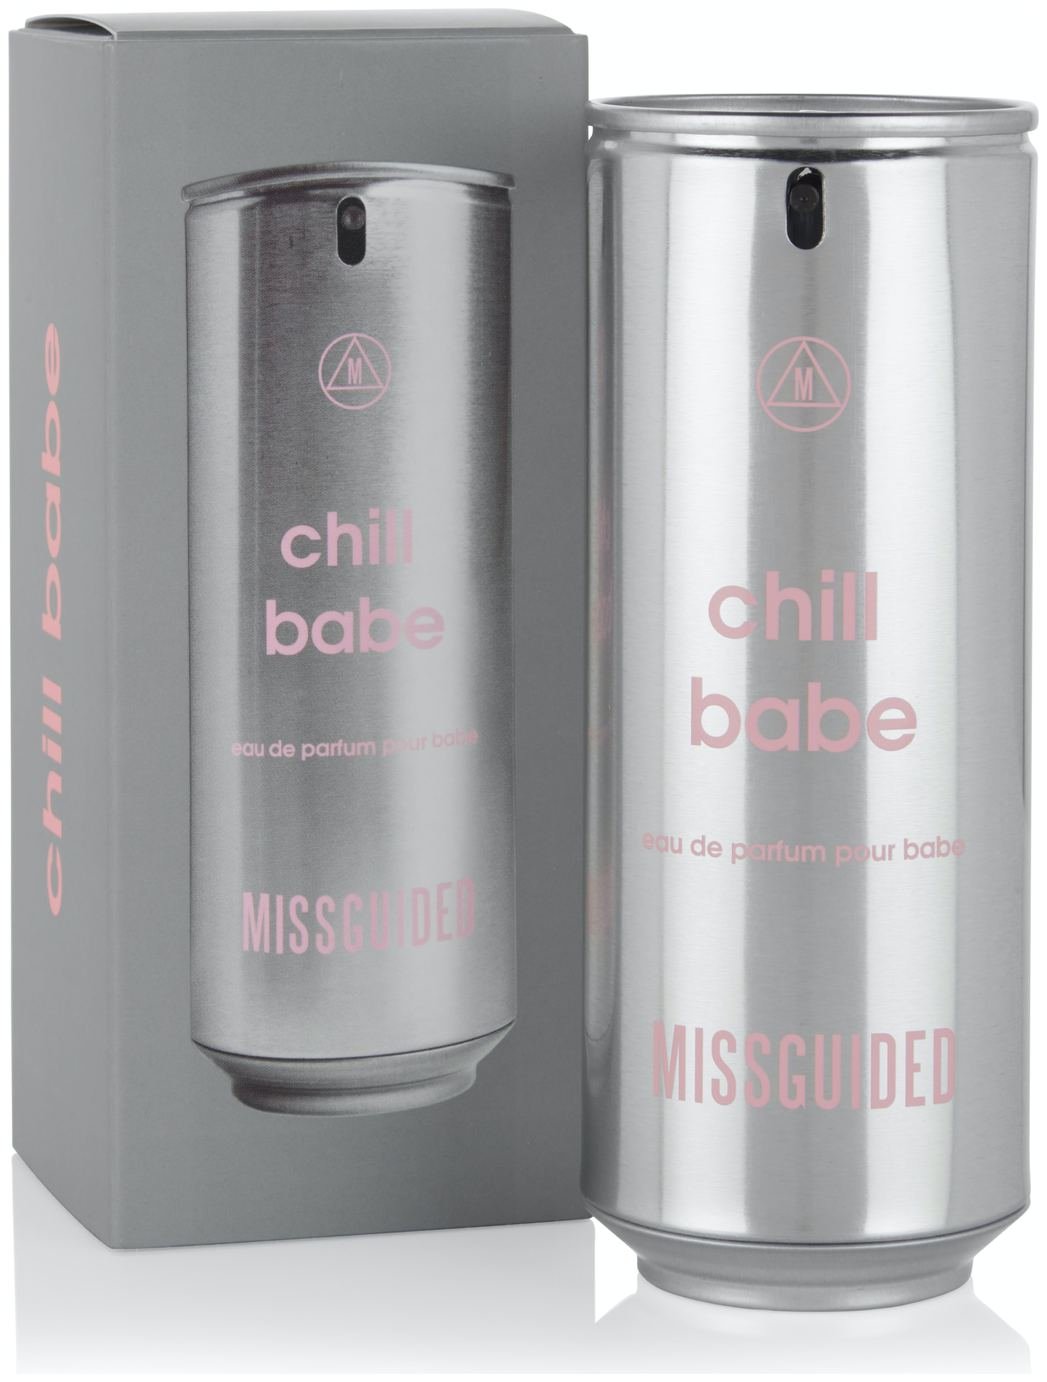 Missguided Chill Babe Eau de Parfum - 80ml